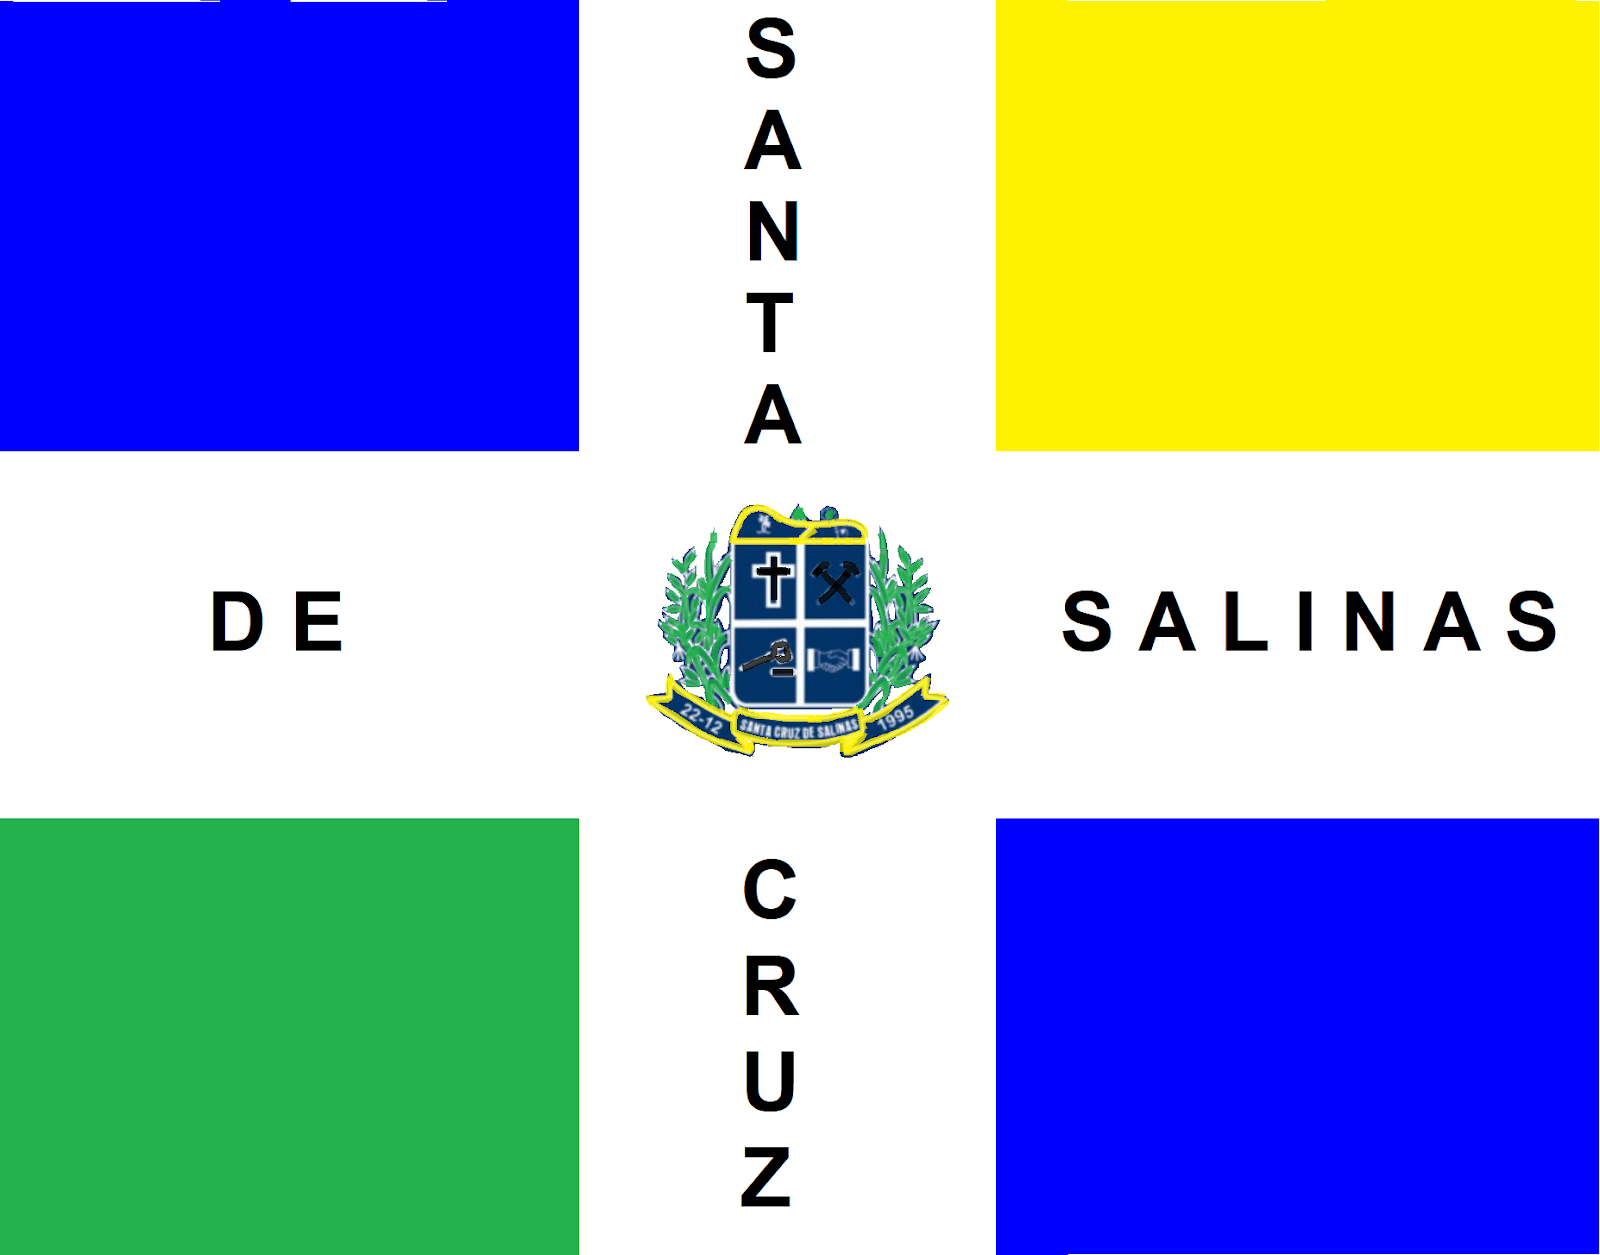 Santa Cruz de Salinas